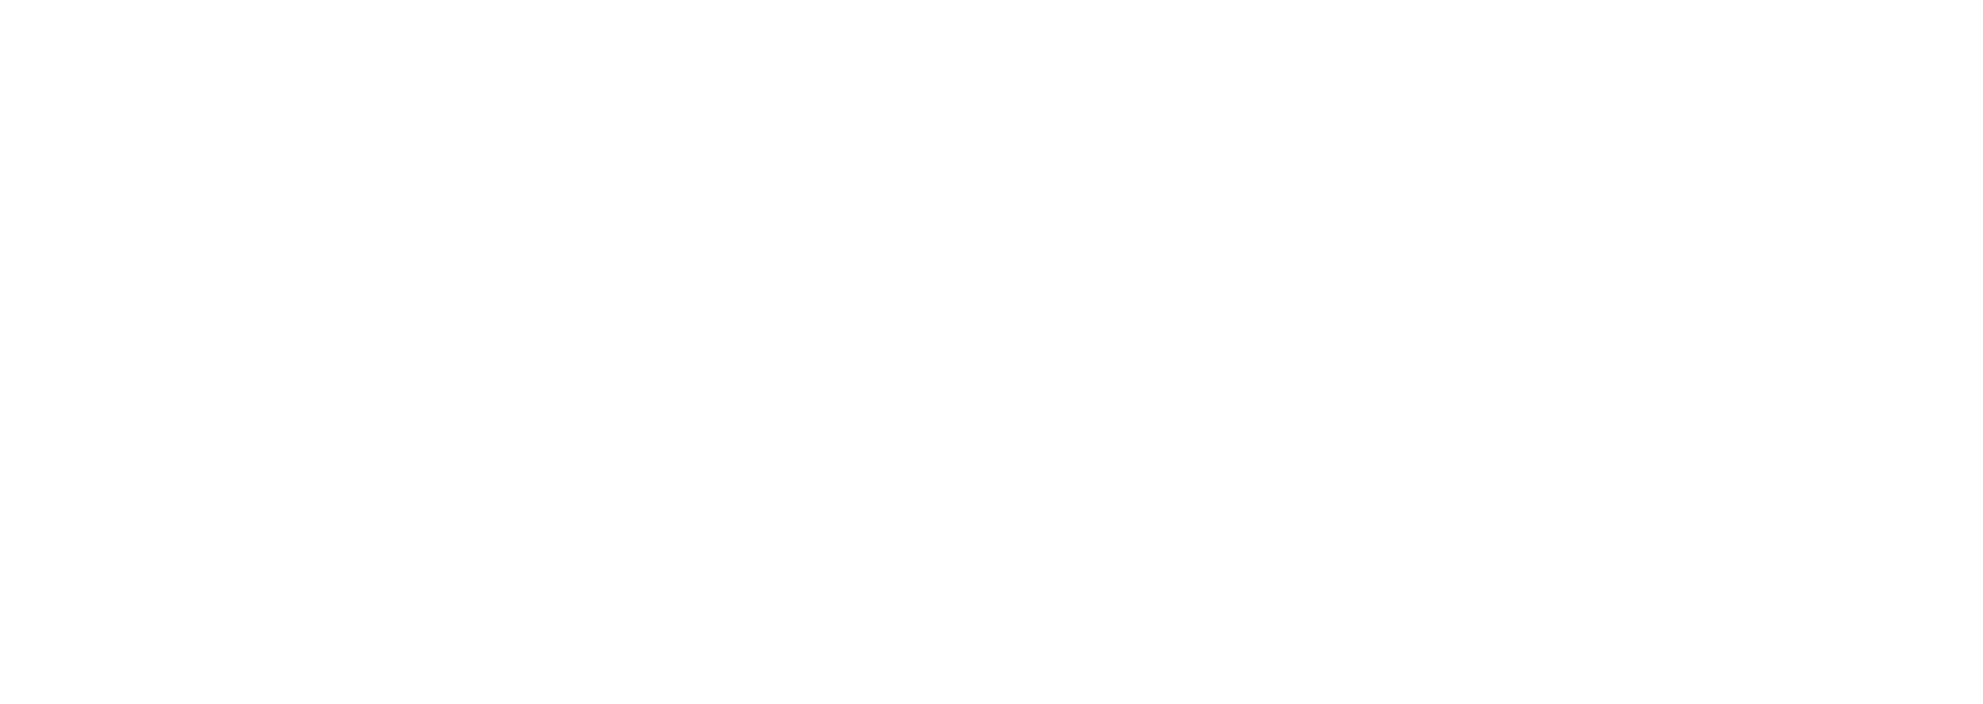 Victim Support Aberdeen - Aberdeen Protects